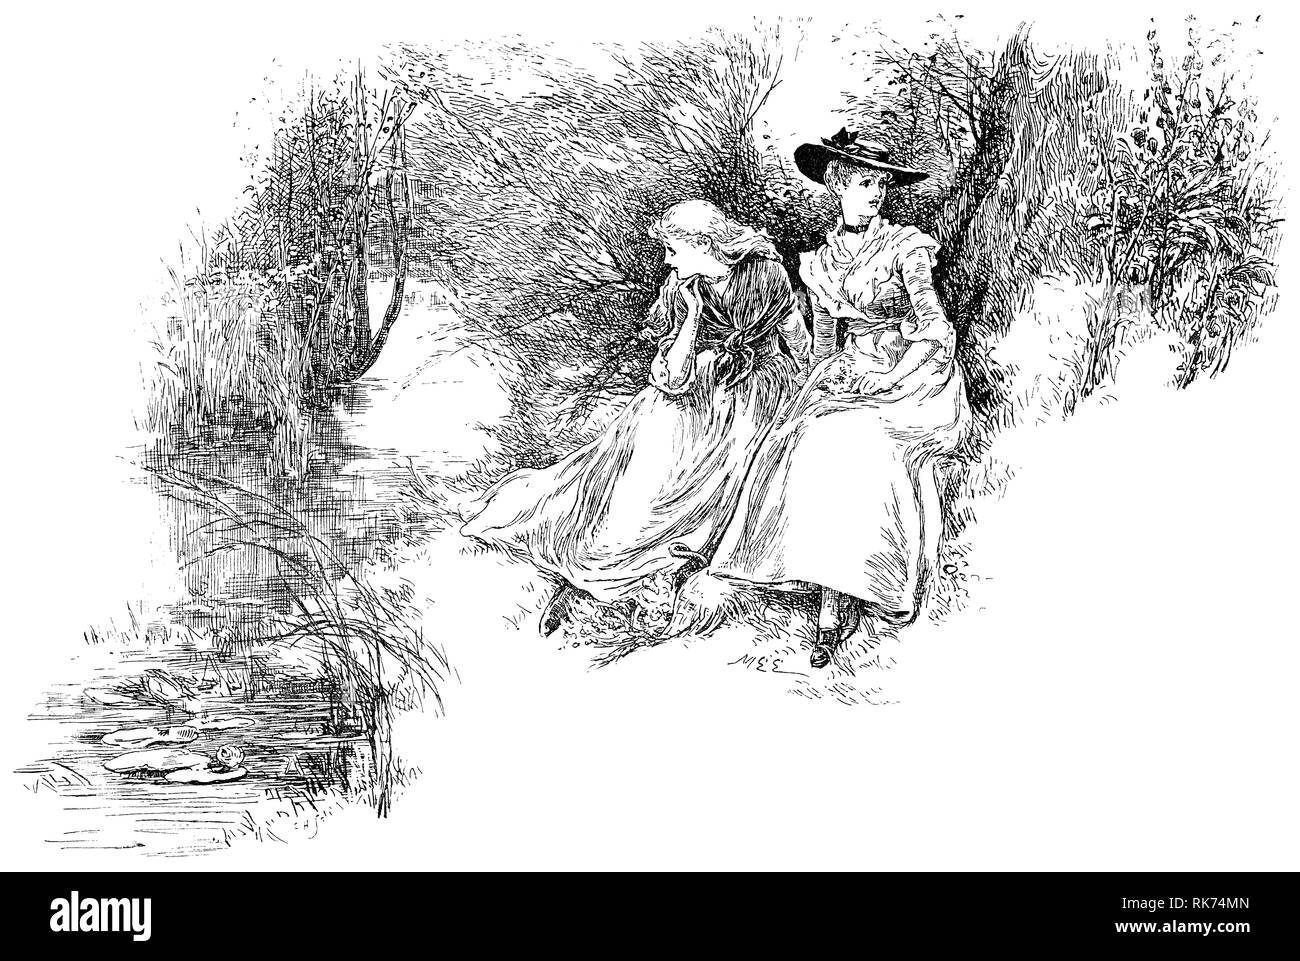 Illustration von Mary Ellen Edwards (1838-1934) von zwei jungen Damen im Viktorianischen Kostüm sitzen durch einen Fluss. Aus Nister's Holiday Jahresbericht 1892. Stockfoto